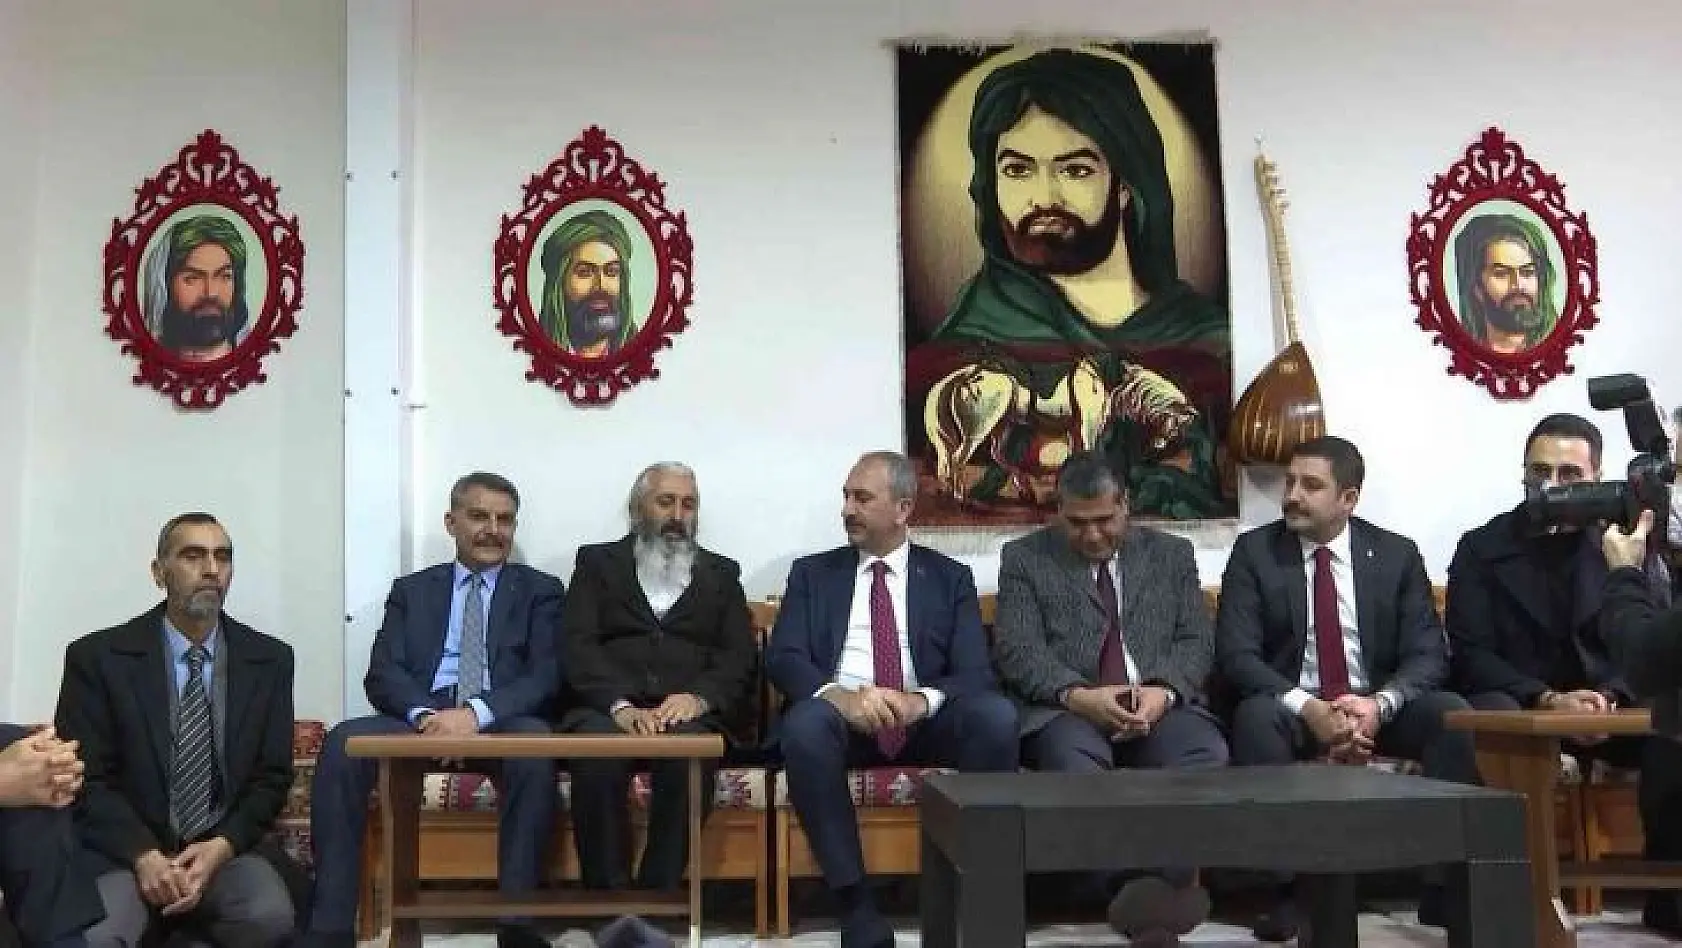 Adalet Bakanı Gül cemevini ziyaret etti: 'Biz hep birlikte Türkiye'yiz'